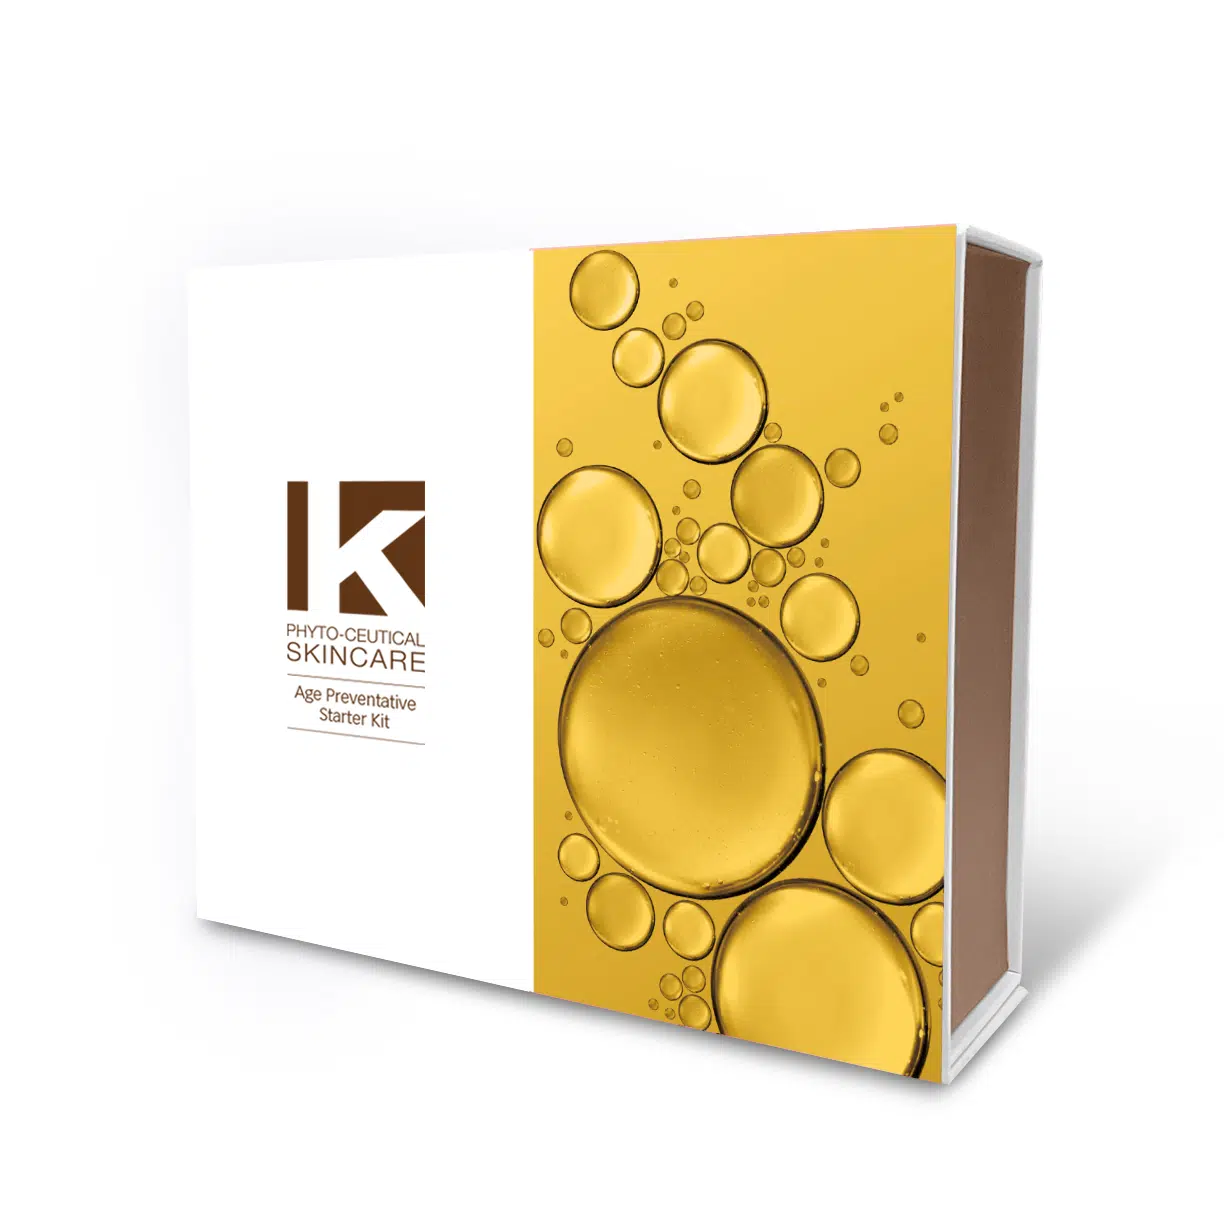 K Phyto-Ceutical Skincare - Age Preventative Kit